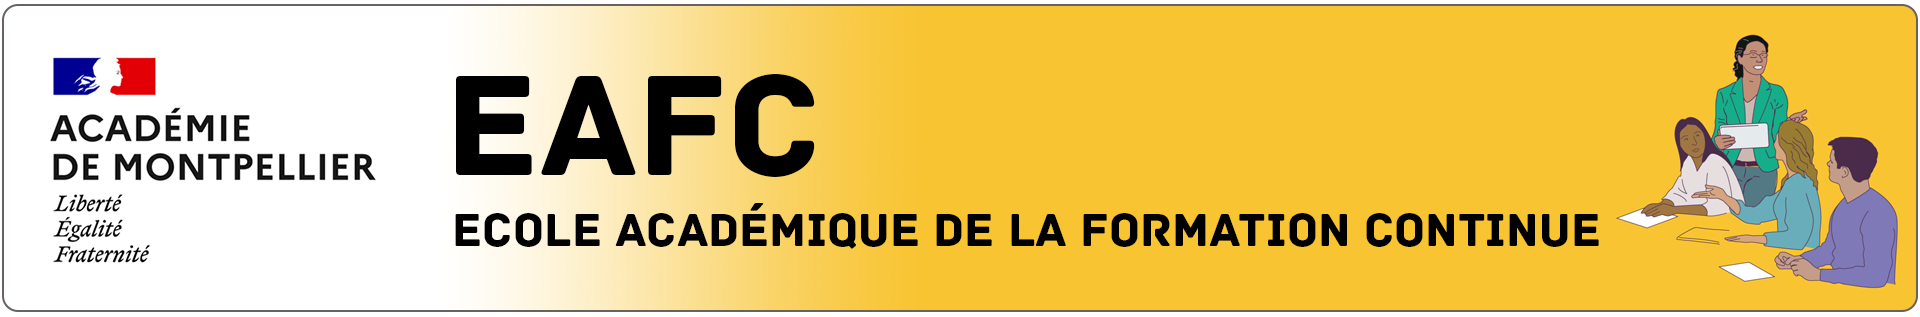 Logo EAFC : école académique de la formation continue